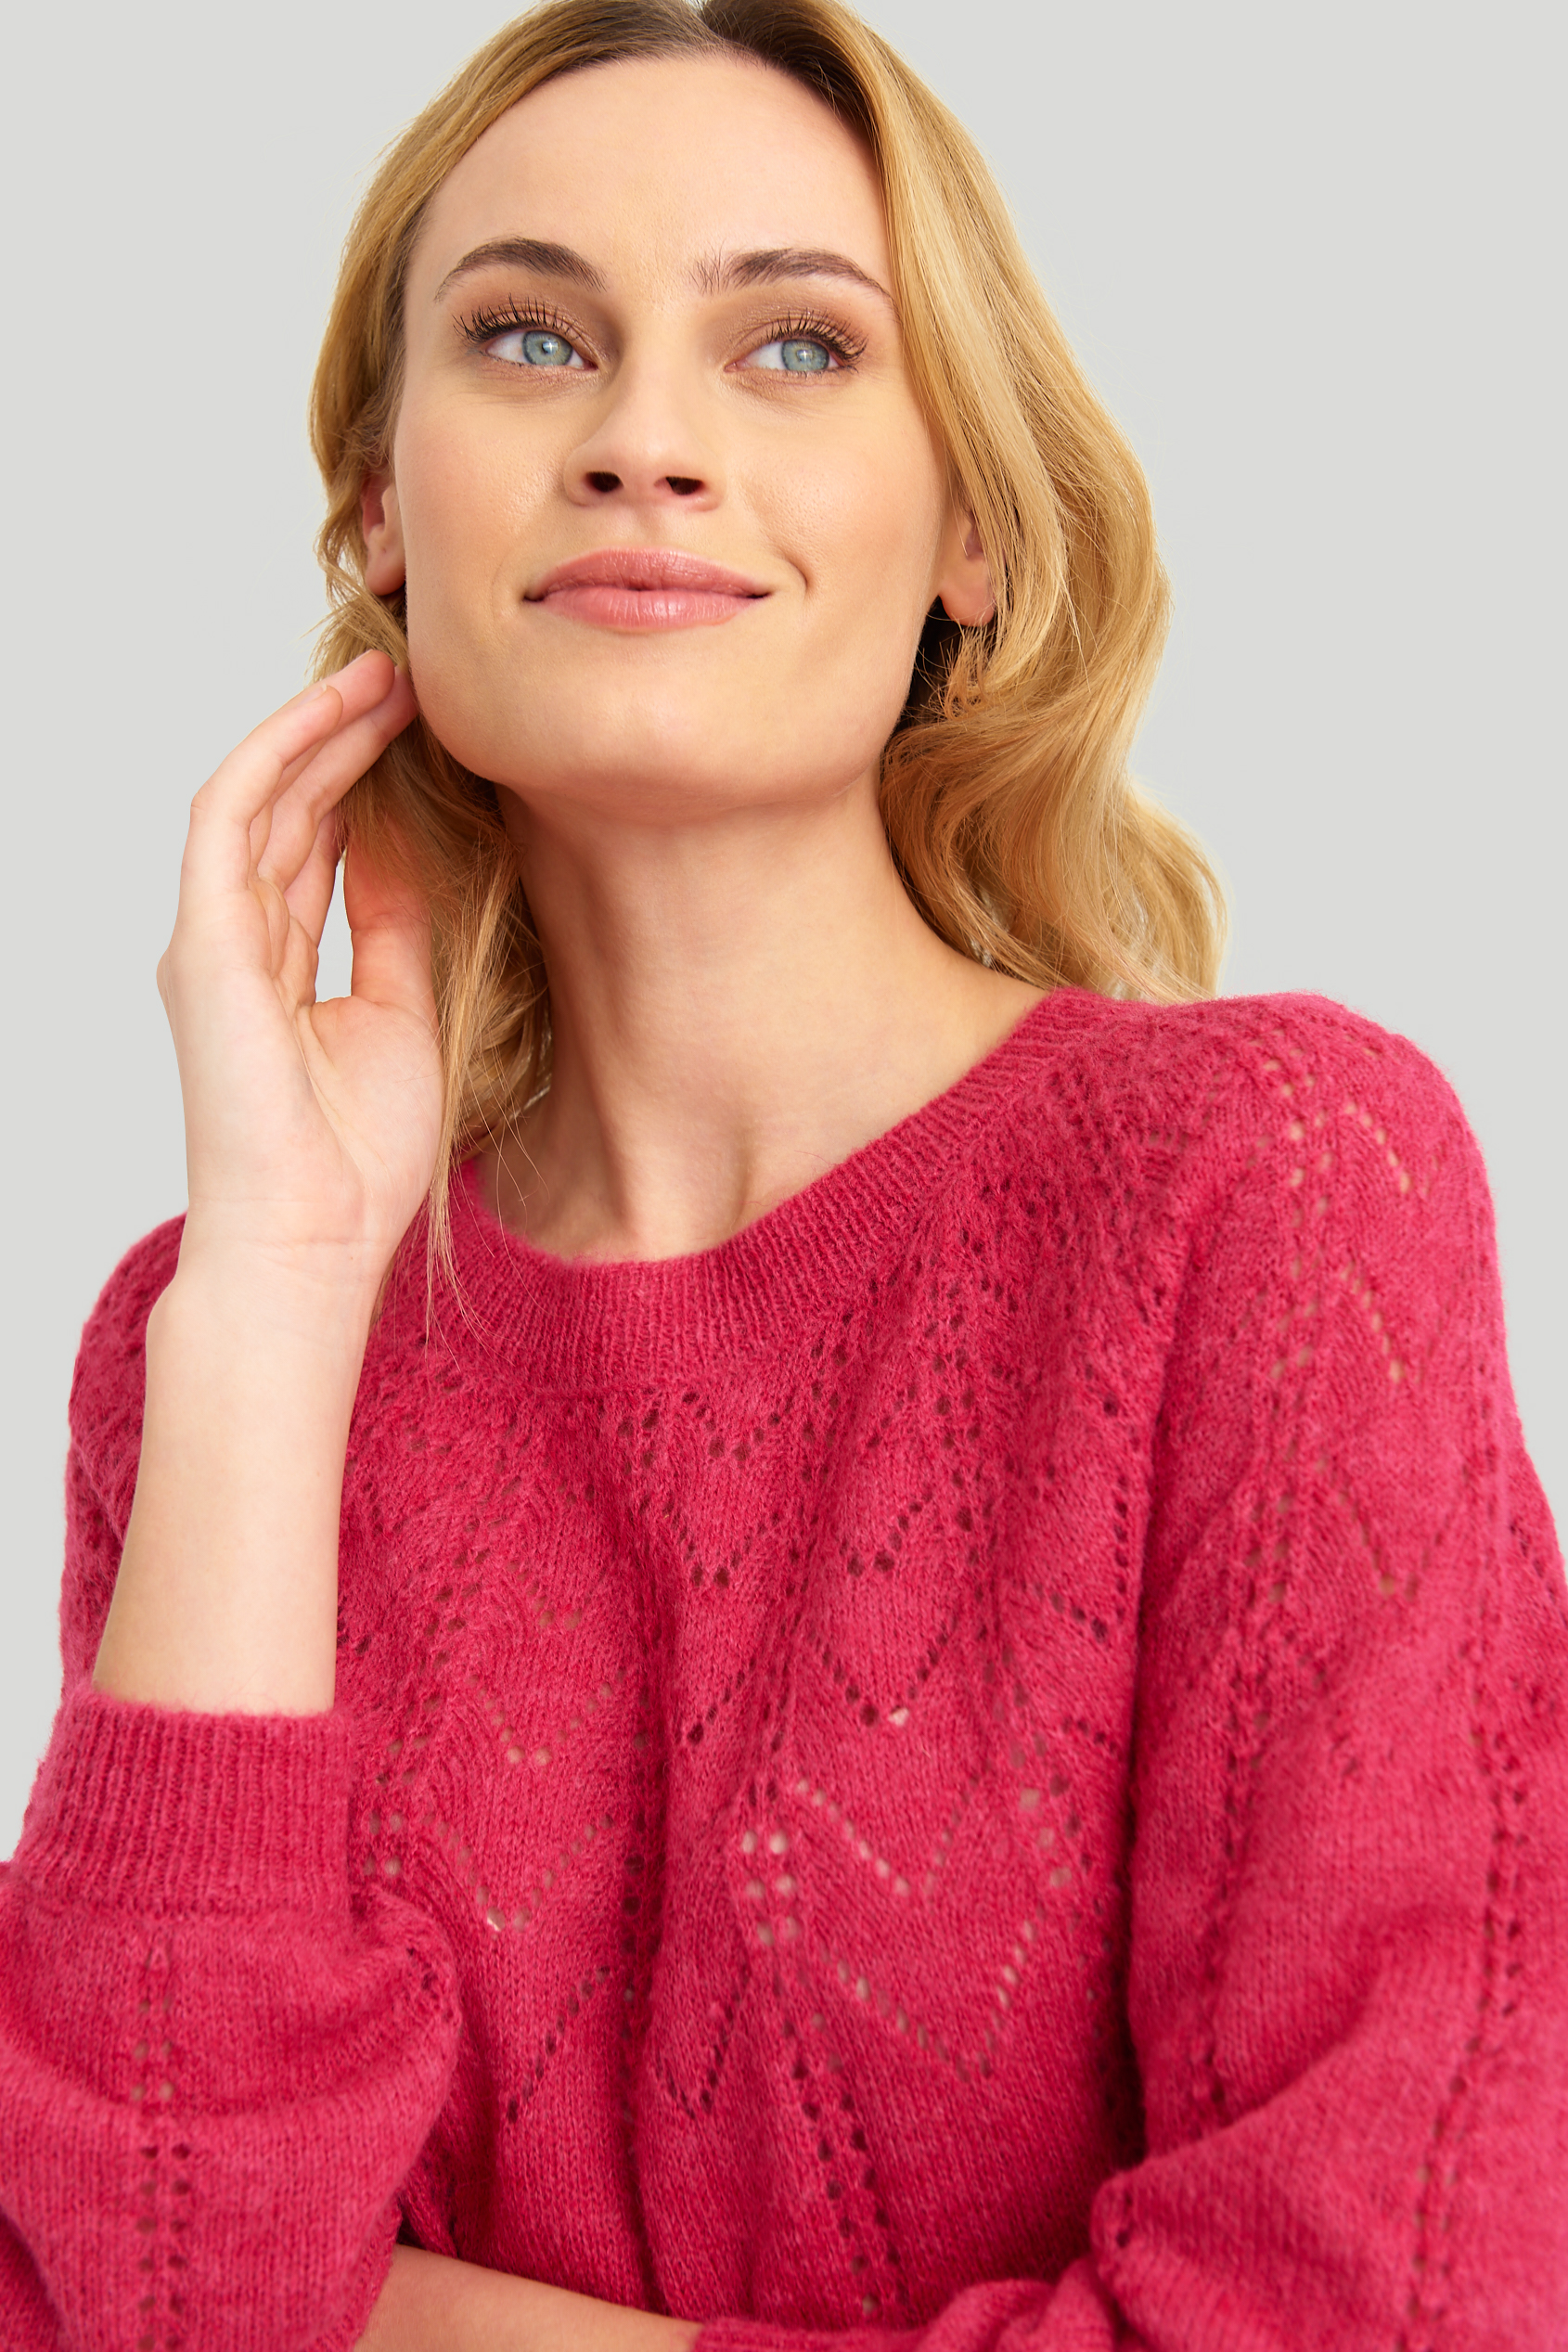 Miękki, ażurowy sweter w różowym kolorze